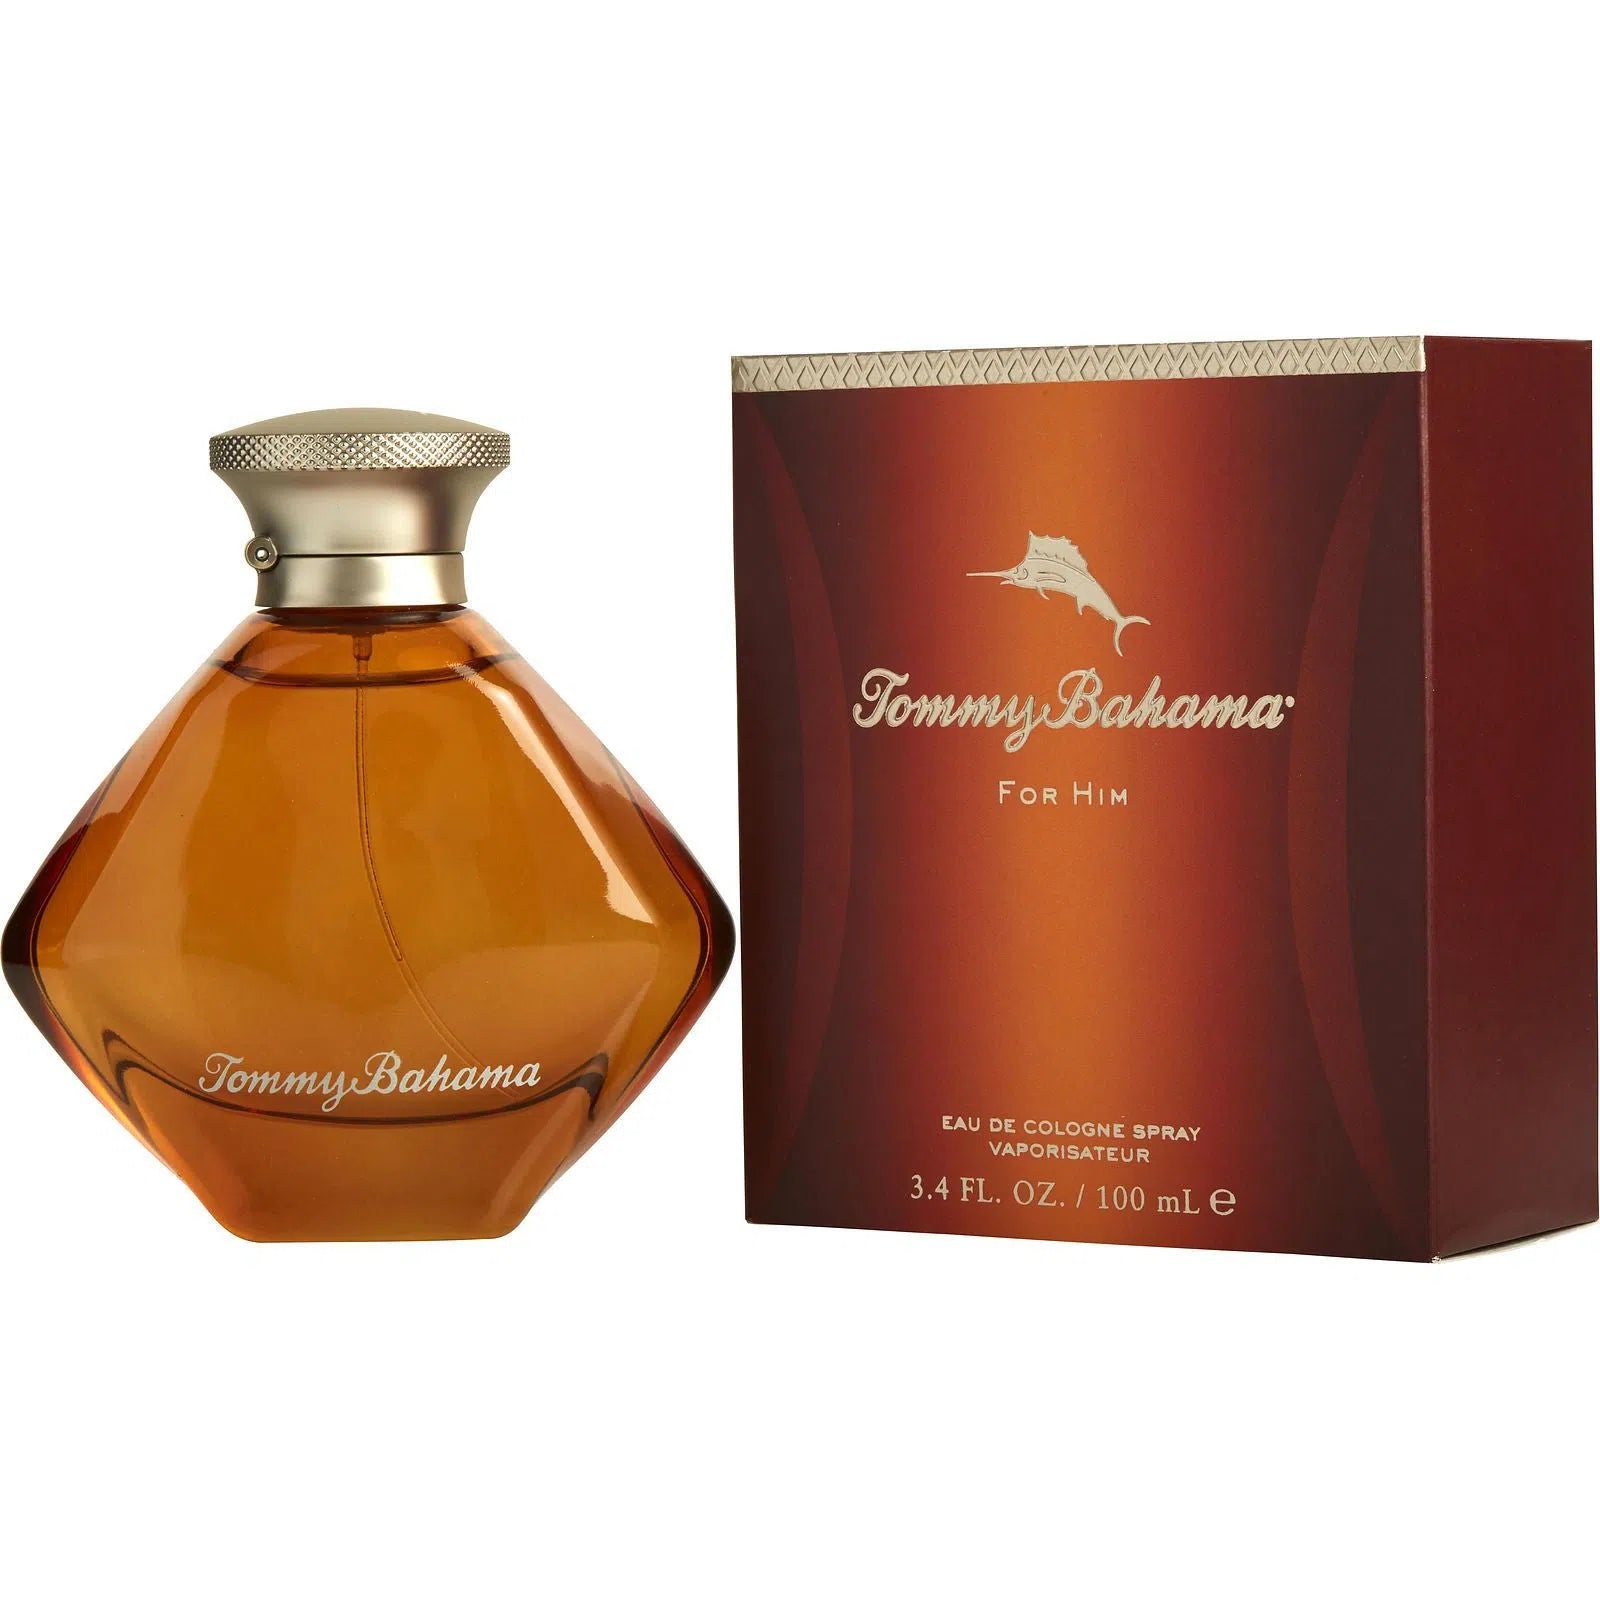 Perfume Tommy Bahama For Him EDC (M) / 100 ml - 603531784106- Prive Perfumes Honduras